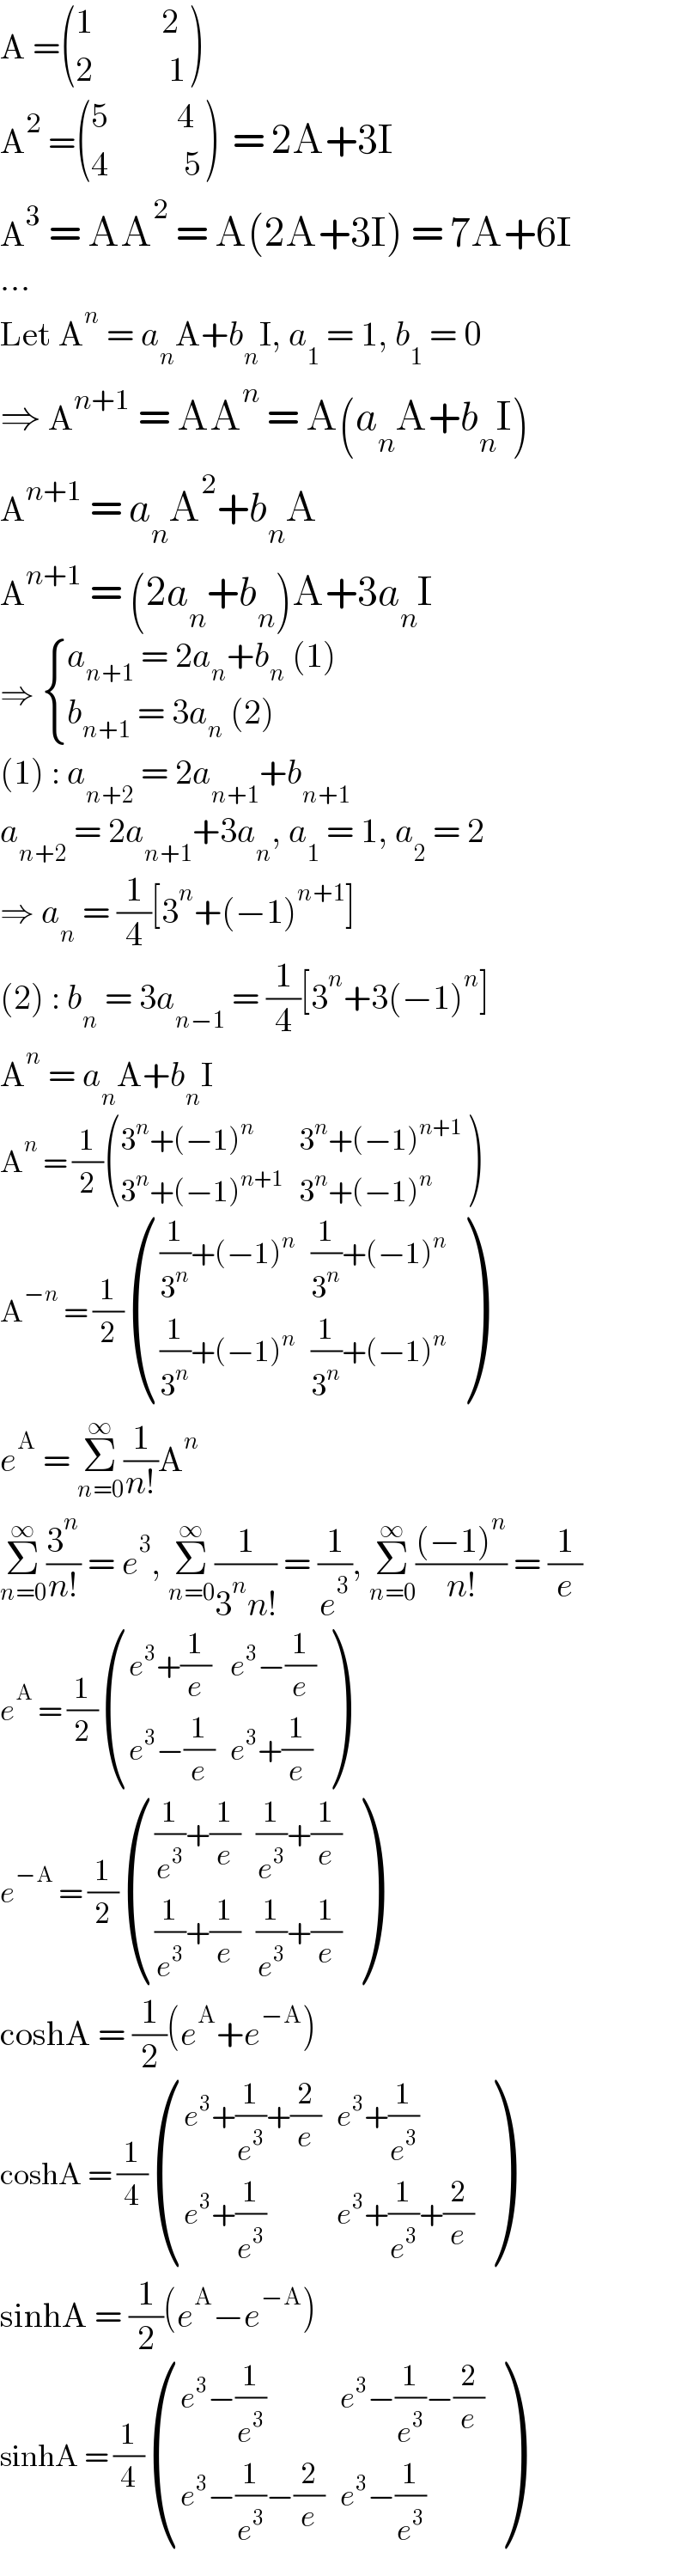 A = (((1          2)),((2           1)) )   A^2  = (((5          4)),((4           5)) )  = 2A+3I  A^3  = AA^2  = A(2A+3I) = 7A+6I  ...  Let A^n  = a_n A+b_n I, a_1  = 1, b_1  = 0  ⇒ A^(n+1)  = AA^n  = A(a_n A+b_n I)  A^(n+1)  = a_n A^2 +b_n A  A^(n+1)  = (2a_n +b_n )A+3a_n I  ⇒  { ((a_(n+1)  = 2a_n +b_n  (1))),((b_(n+1)  = 3a_n  (2))) :}  (1) : a_(n+2)  = 2a_(n+1) +b_(n+1)   a_(n+2)  = 2a_(n+1) +3a_n , a_1  = 1, a_2  = 2  ⇒ a_n  = (1/4)[3^n +(−1)^(n+1) ]  (2) : b_n  = 3a_(n−1)  = (1/4)[3^n +3(−1)^n ]  A^n  = a_n A+b_n I  A^n  = (1/2) (((3^n +(−1)^n ),(3^n +(−1)^(n+1) )),((3^n +(−1)^(n+1) ),(3^n +(−1)^n )) )  A^(−n)  = (1/2) ((((1/3^n )+(−1)^n ),((1/3^n )+(−1)^n )),(((1/3^n )+(−1)^n ),((1/3^n )+(−1)^n )) )  e^A  = Σ_(n=0) ^∞ (1/(n!))A^n   Σ_(n=0) ^∞ (3^n /(n!)) = e^3 , Σ_(n=0) ^∞ (1/(3^n n!)) = (1/e^3 ), Σ_(n=0) ^∞ (((−1)^n )/(n!)) = (1/e)  e^A  = (1/2) (((e^3 +(1/e)),(e^3 −(1/e))),((e^3 −(1/e)),(e^3 +(1/e))) )  e^(−A)  = (1/2) ((((1/e^3 )+(1/e)),((1/e^3 )+(1/e))),(((1/e^3 )+(1/e)),((1/e^3 )+(1/e))) )  coshA = (1/2)(e^A +e^(−A) )  coshA = (1/4) (((e^3 +(1/e^3 )+(2/e)),(e^3 +(1/e^3 ))),((e^3 +(1/e^3 )),(e^3 +(1/e^3 )+(2/e))) )  sinhA = (1/2)(e^A −e^(−A) )  sinhA = (1/4) (((e^3 −(1/e^3 )),(e^3 −(1/e^3 )−(2/e))),((e^3 −(1/e^3 )−(2/e)),(e^3 −(1/e^3 ))) )  